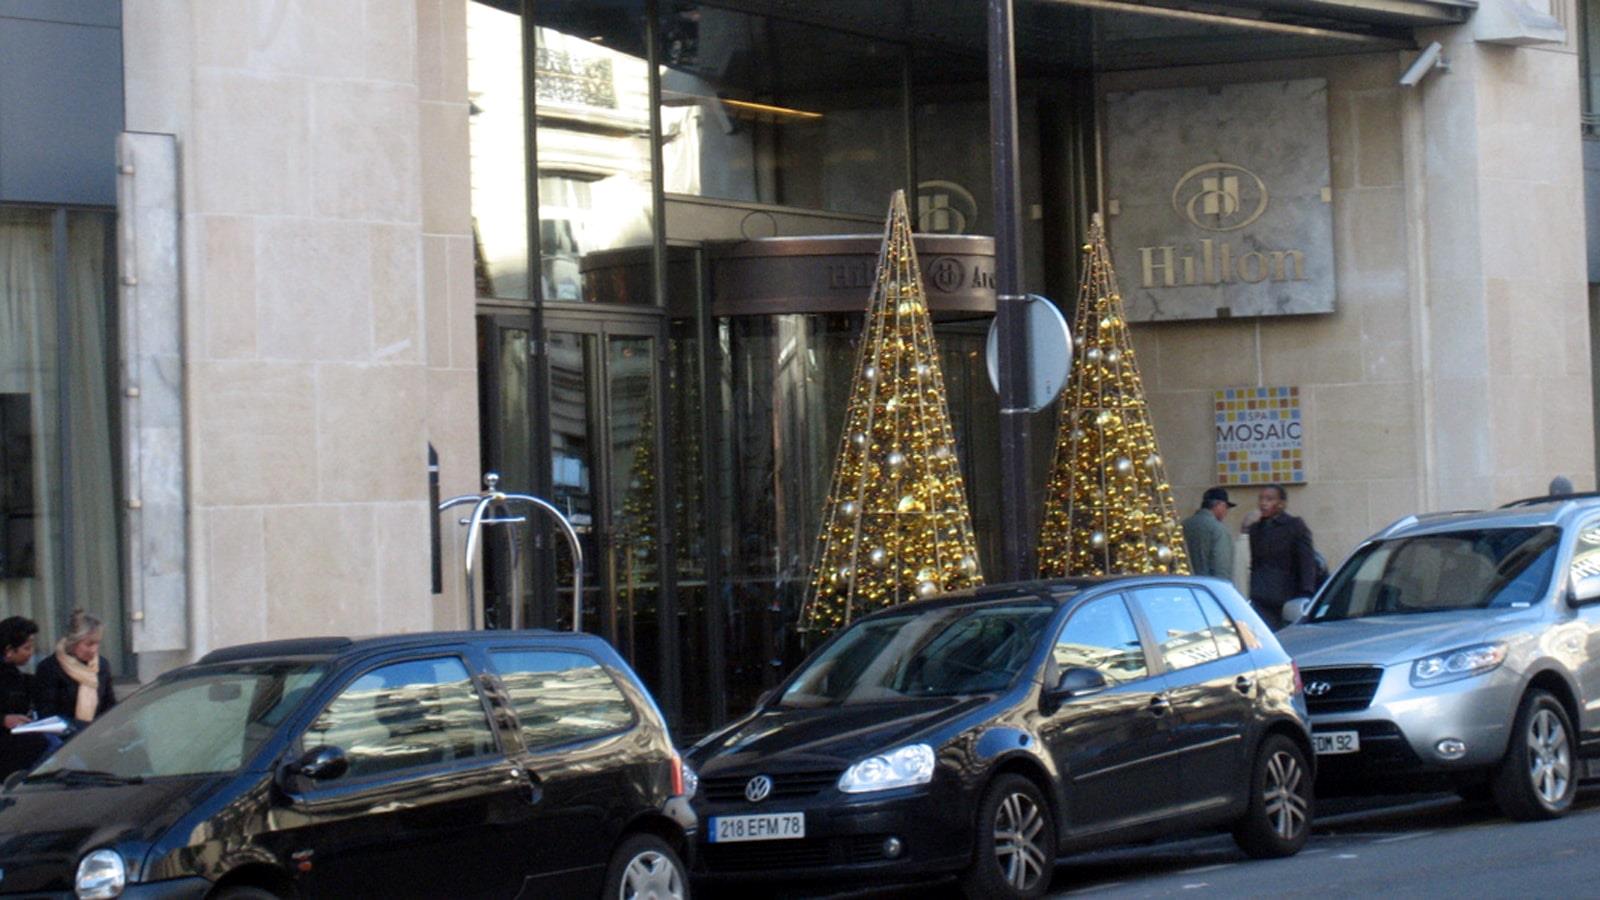 To juletræer med gylden dekoration ved indgangen til Hilton Hotel